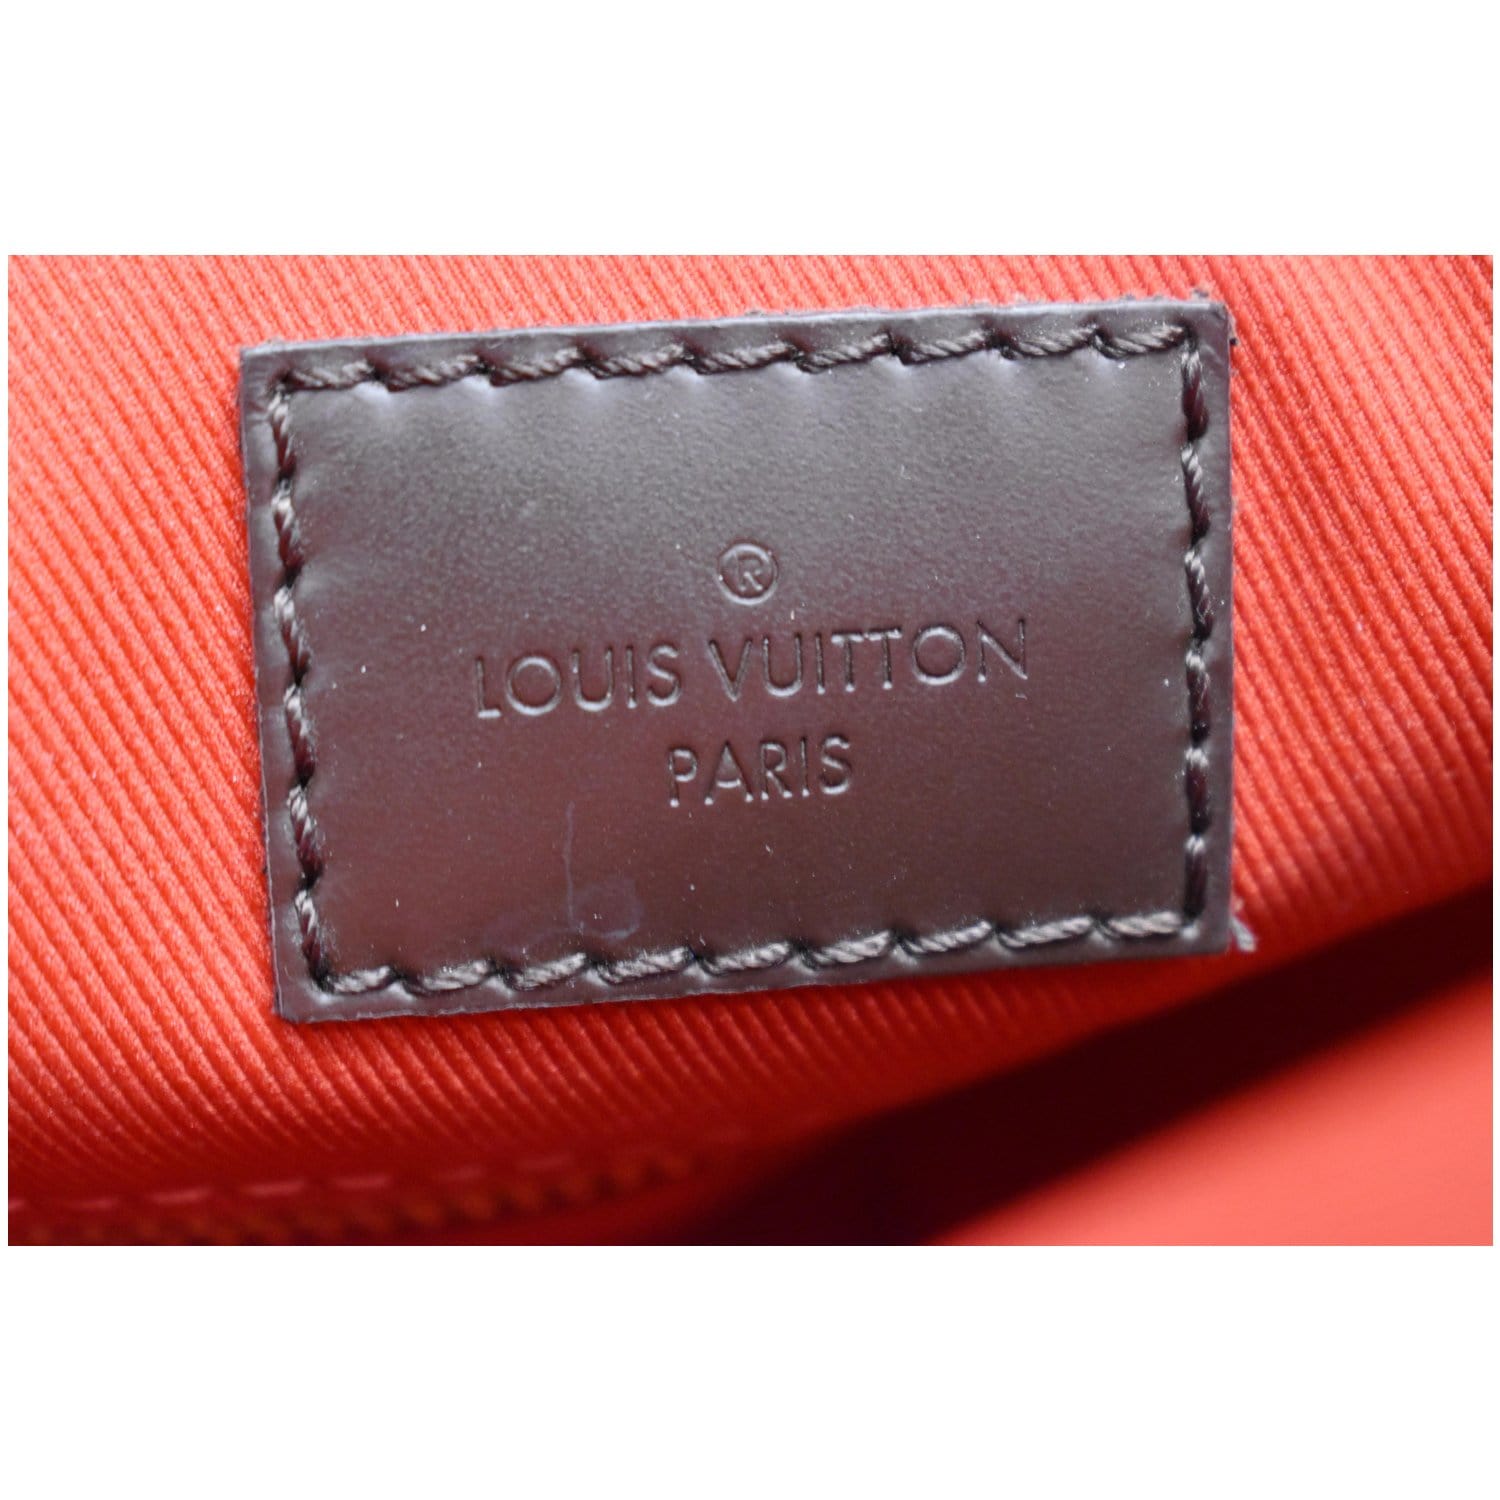 Ο χρήστης Louis Vuitton στο Twitter: A new signature emerges. Embossed  Infinity Light and Infinity Dark at the #LouisVuitton Fall-Winter 2018  Fashion Show by @MrKimJones. See all the #LVMenFW18 look